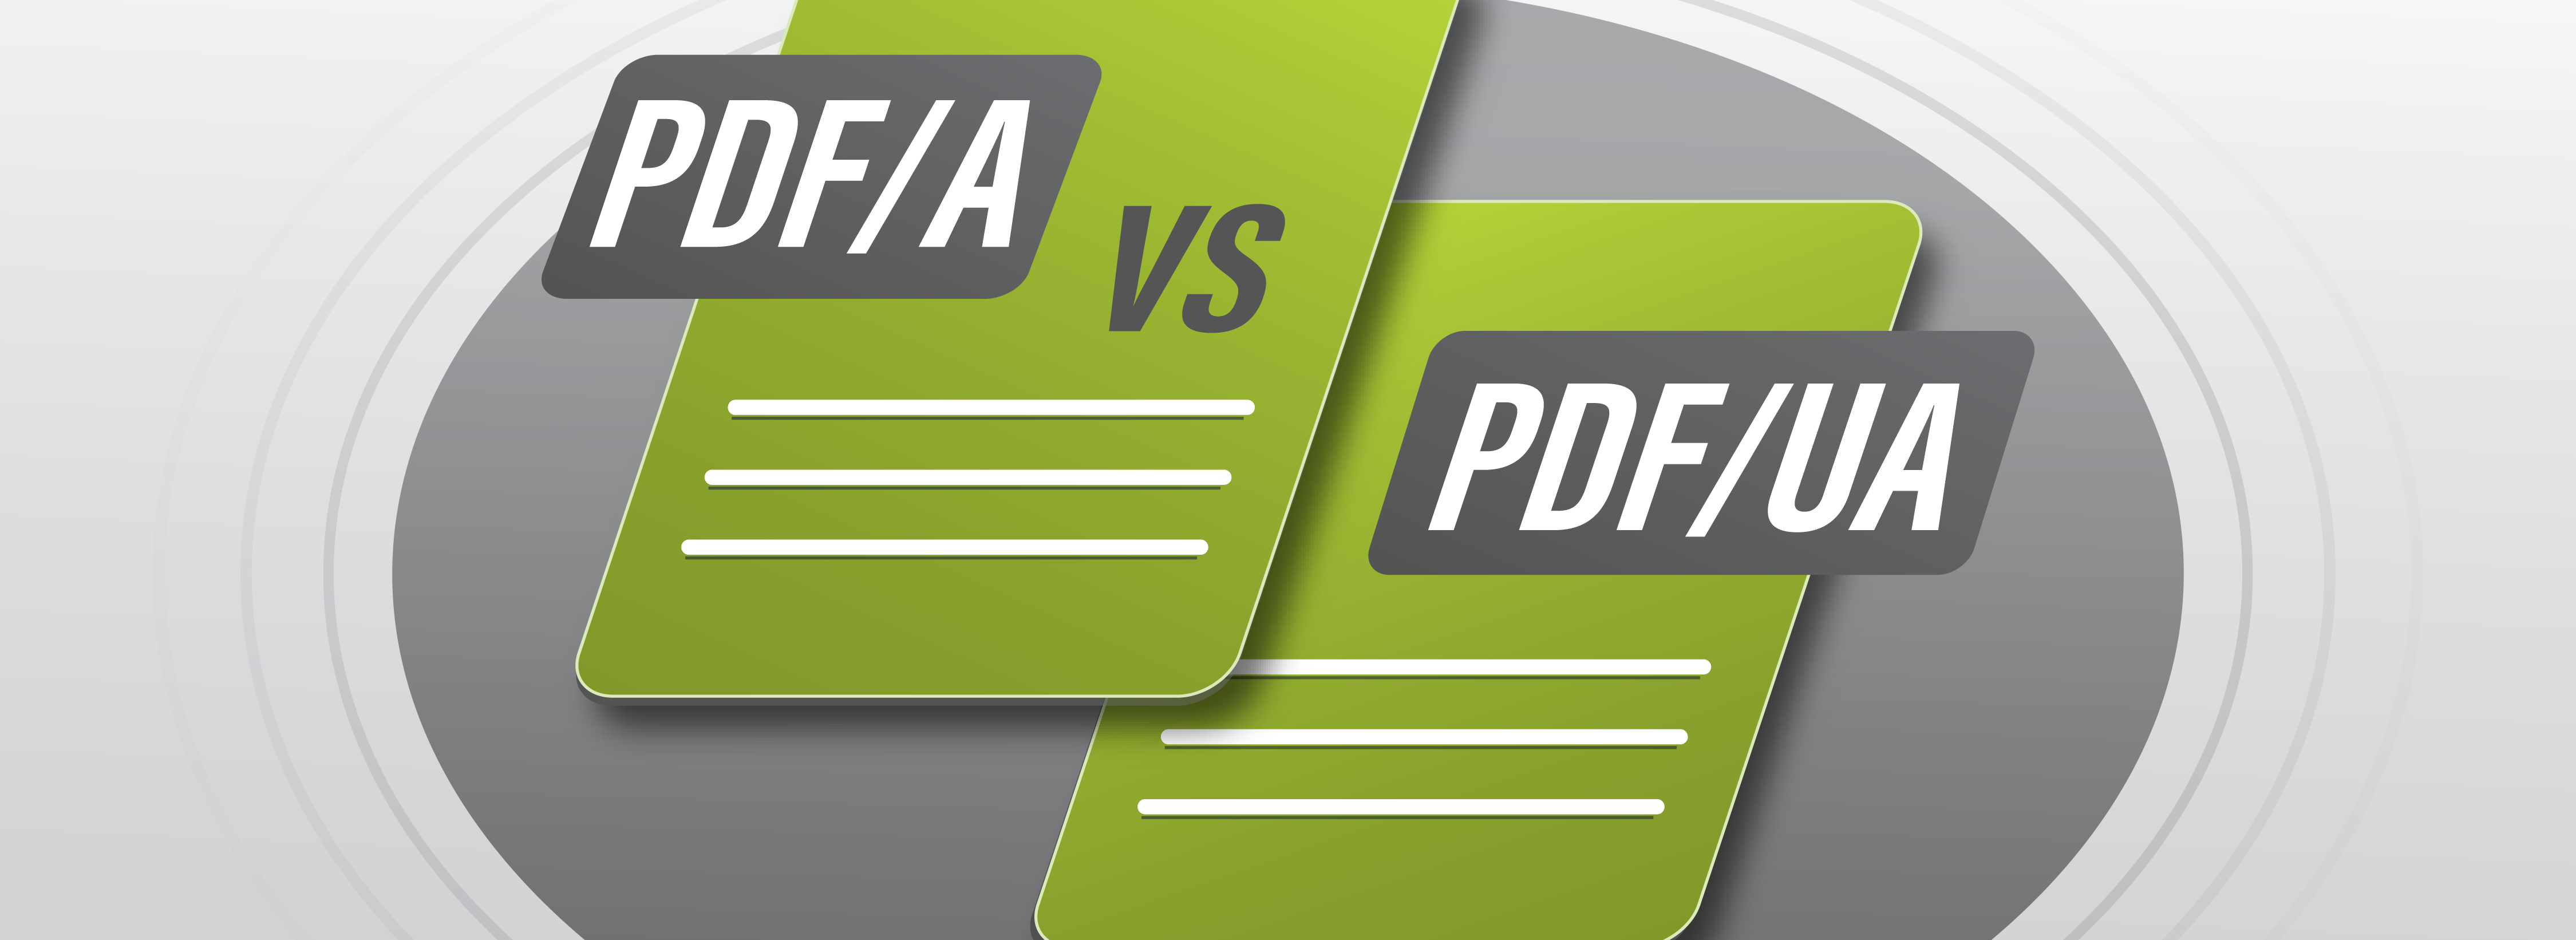 PDF/A vs PDF/UA vor 2 grünen Dokumenten, die sich leicht überlappen.